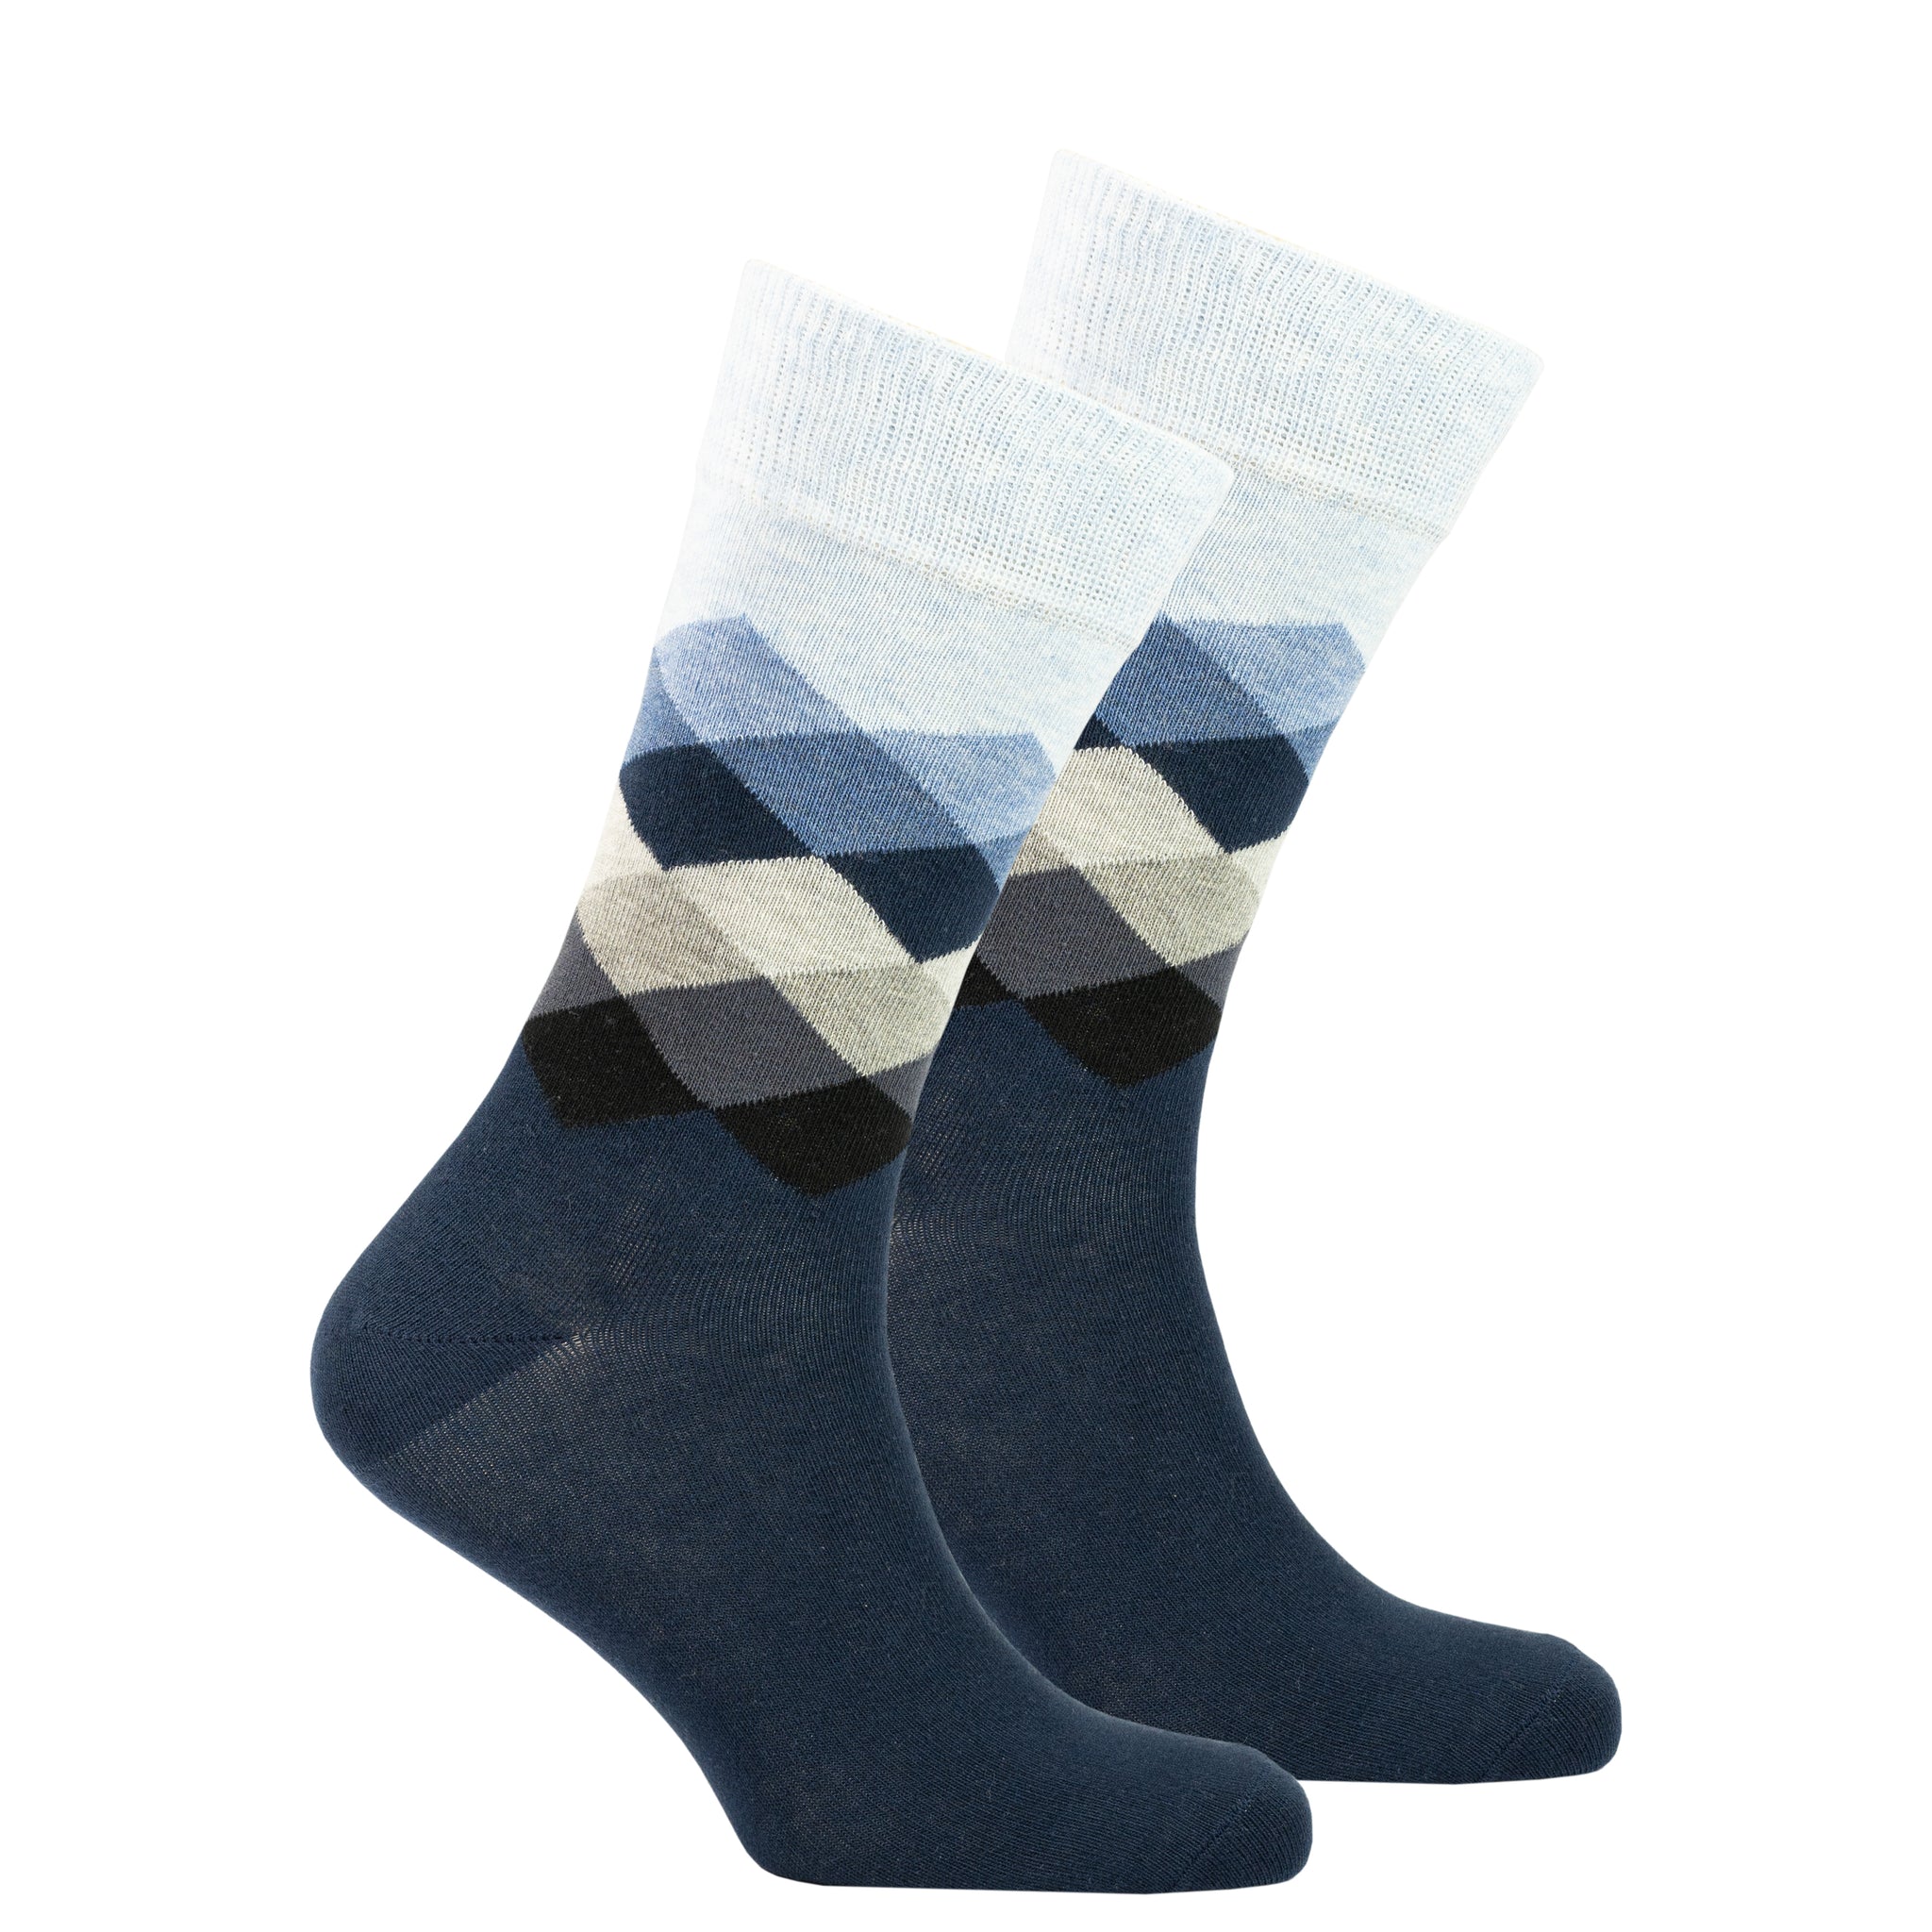 Men's Azure Diamond Socks black and white